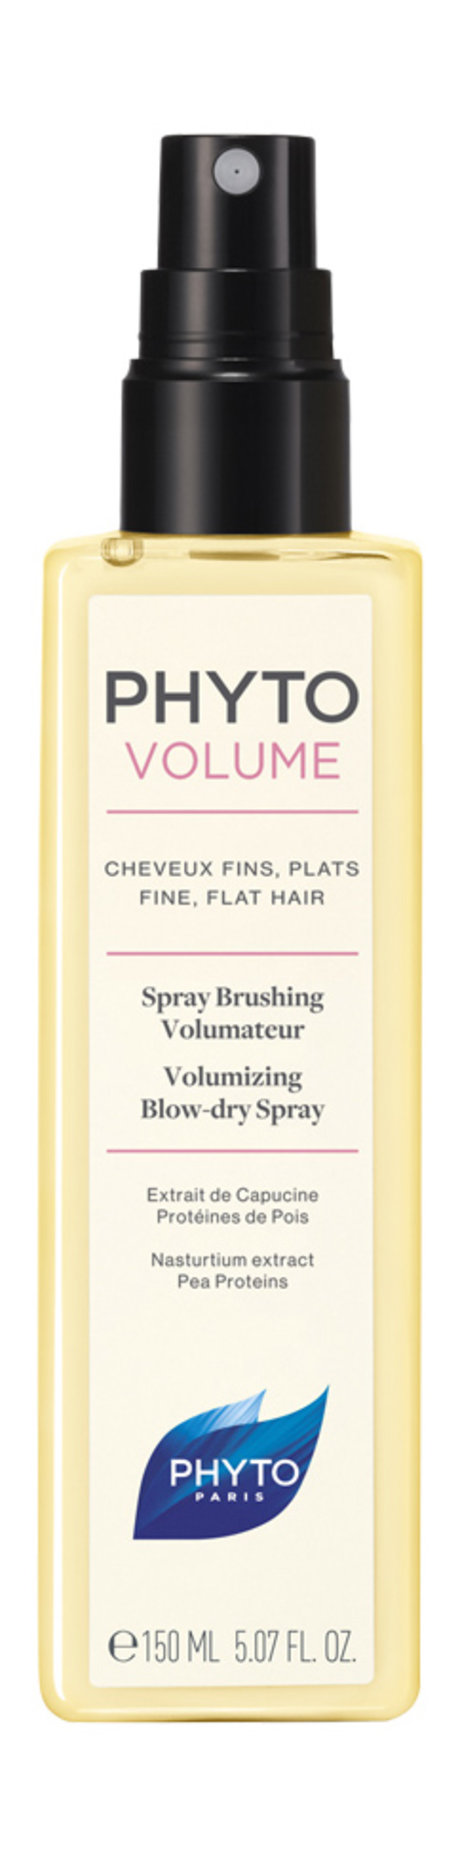 phyto phytovolume spray brushing volumateur